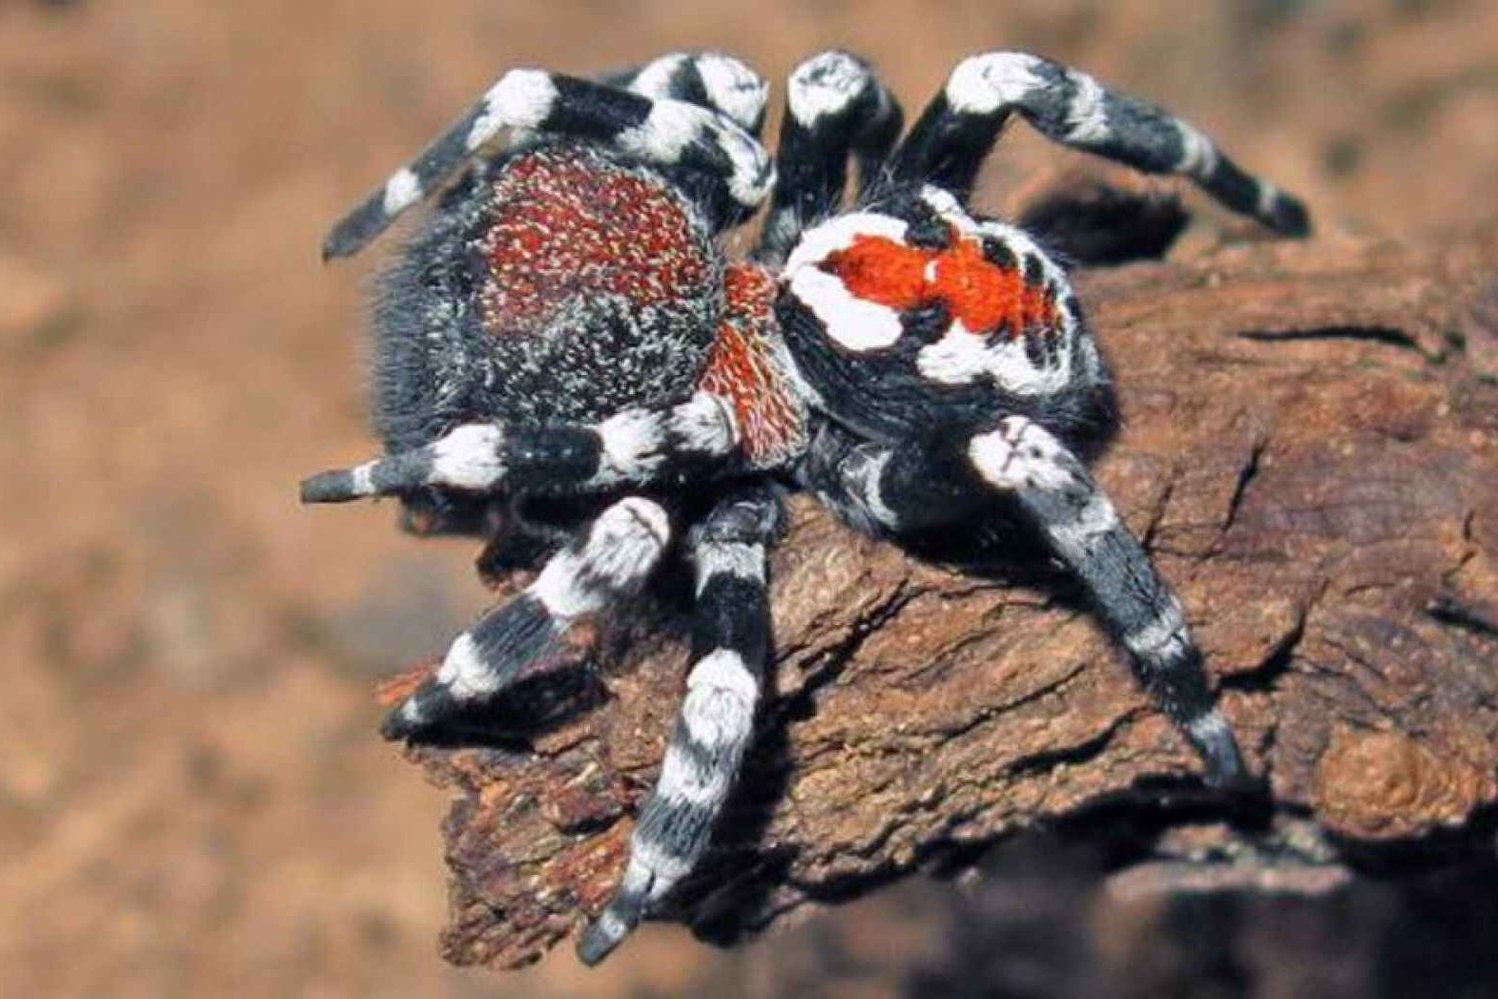 Новый вид пауков с Джокером на спине назвали в честь актера Хоакина Феникса